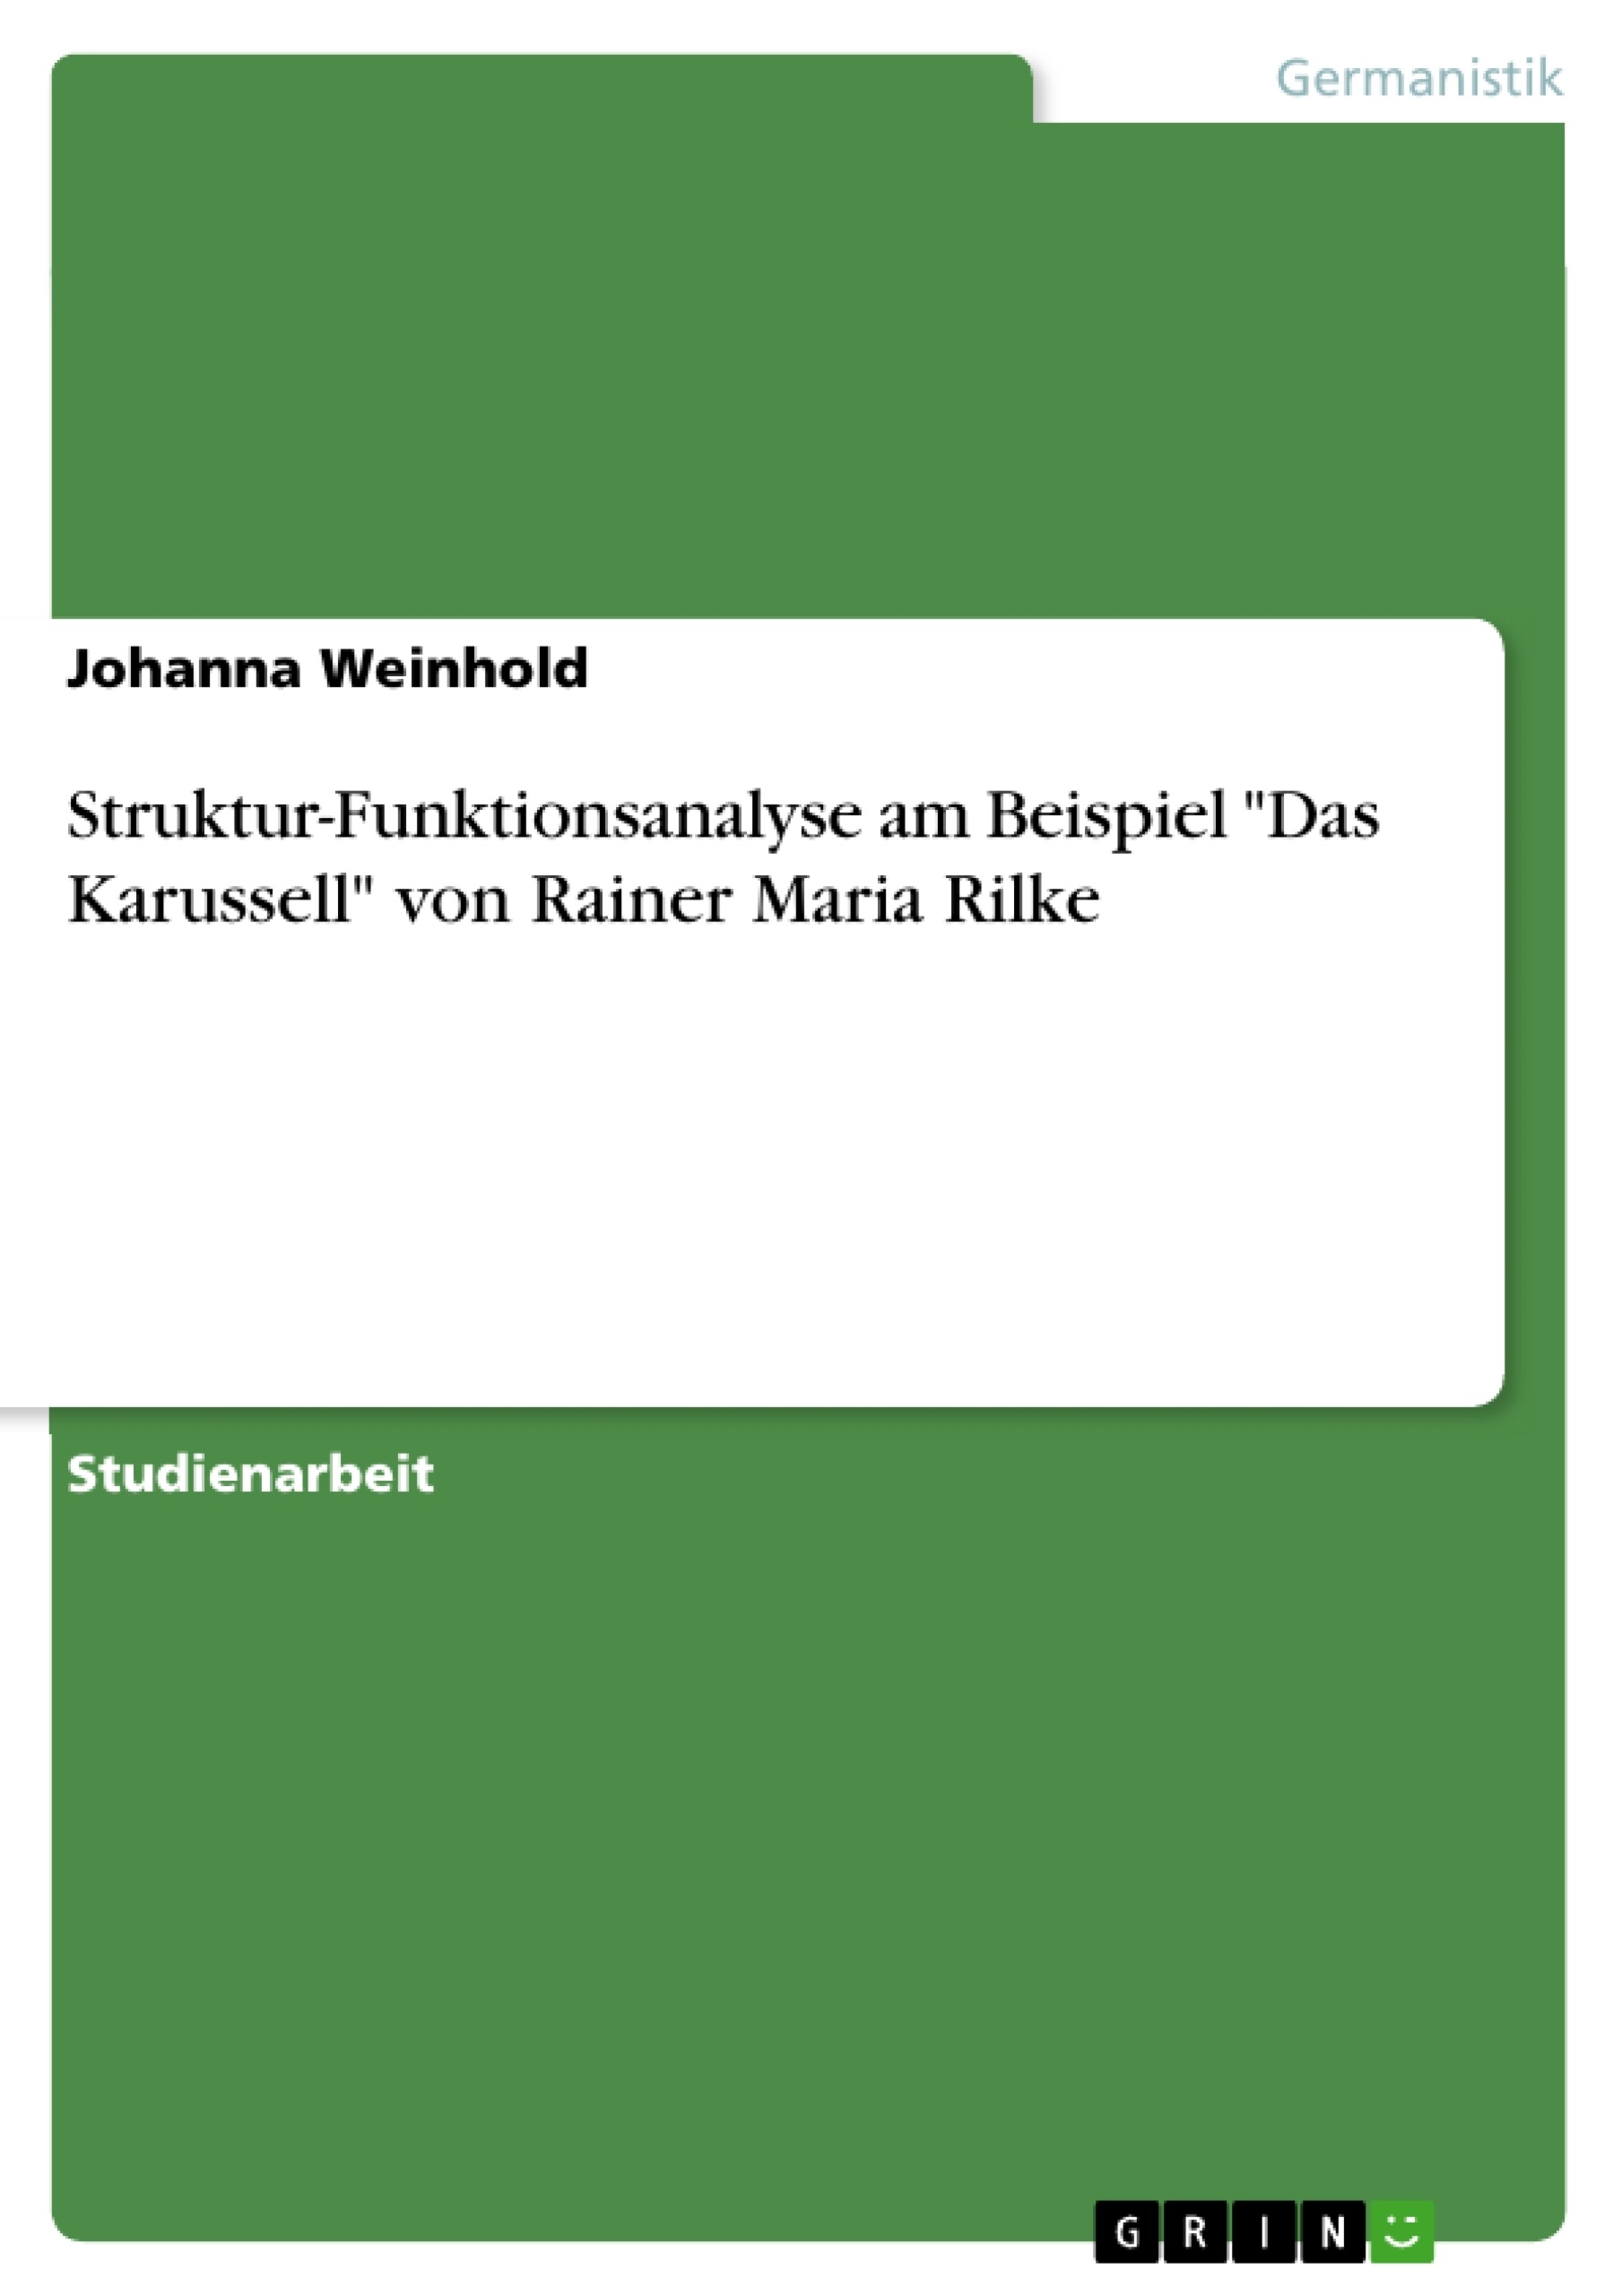 Titre: Struktur-Funktionsanalyse am Beispiel "Das Karussell" von Rainer Maria Rilke